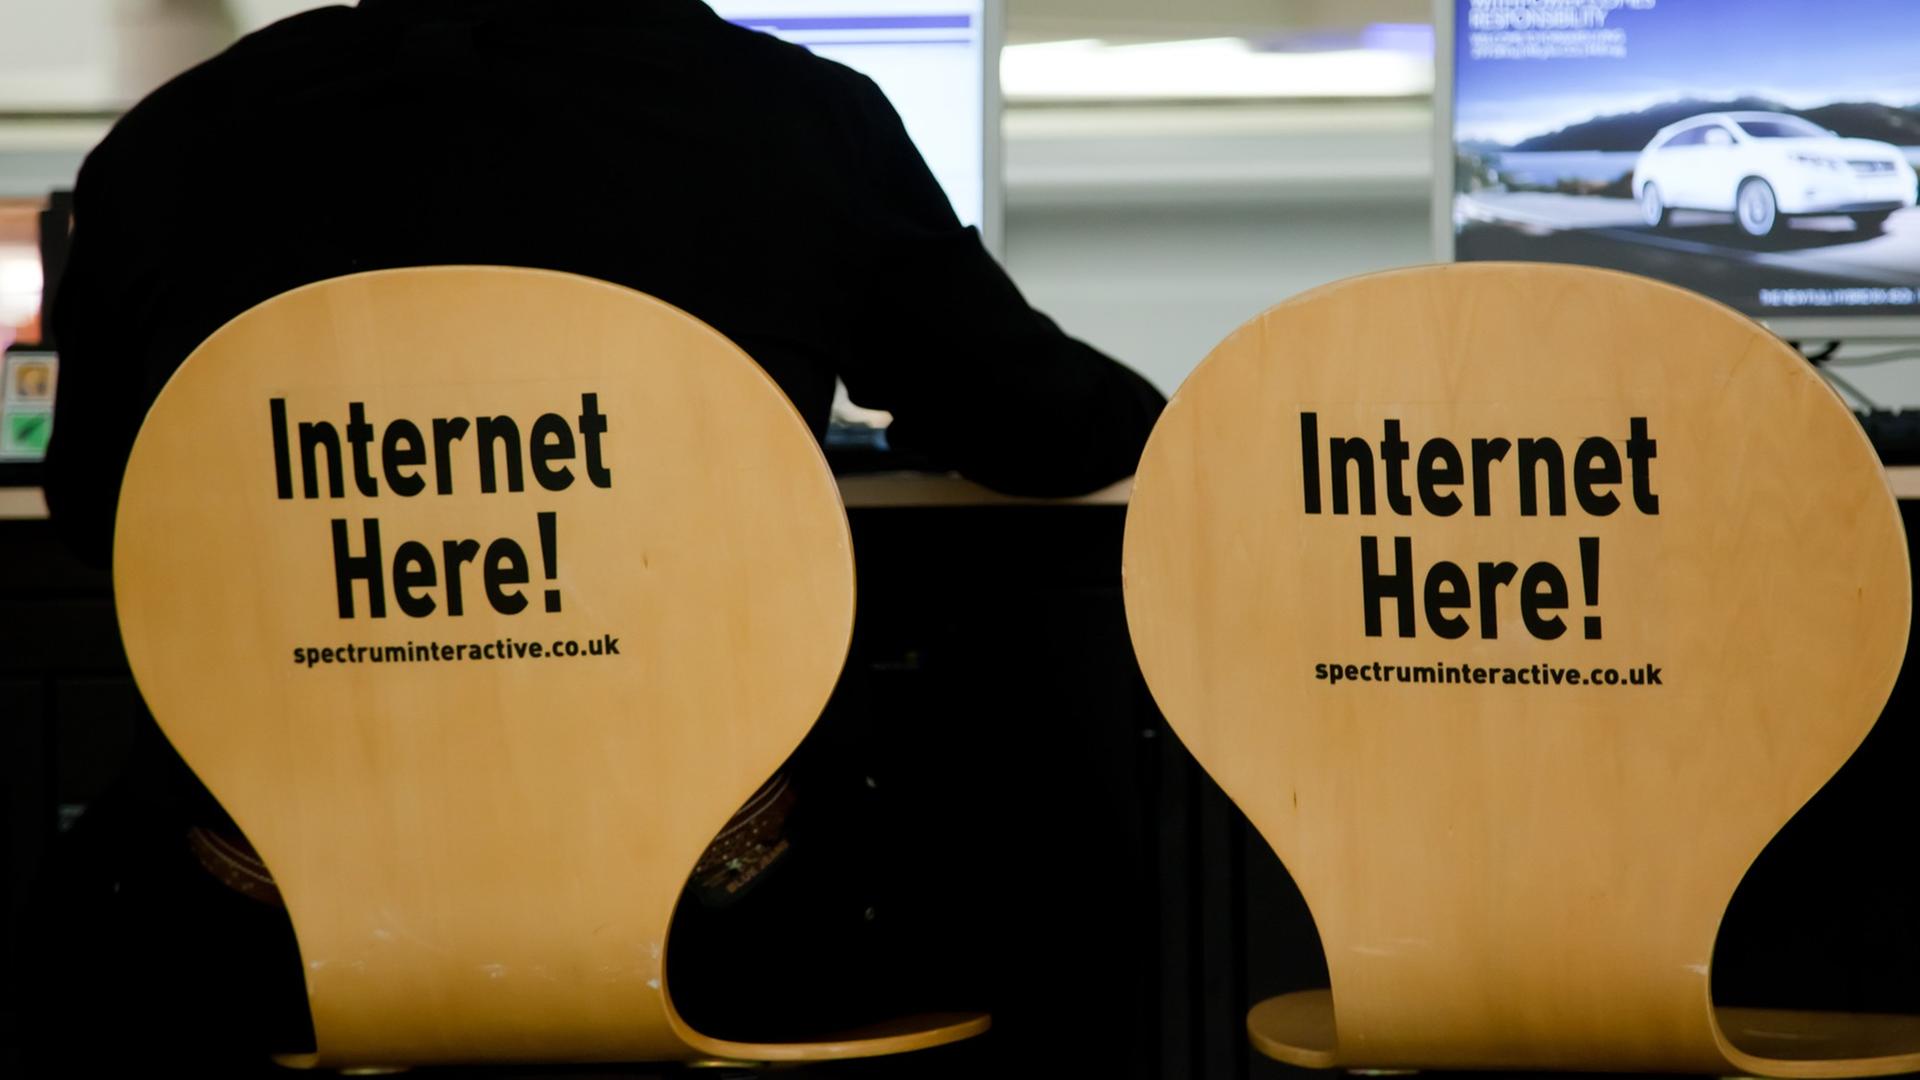 Ein Mann sitzt auf einem Stuhl, auf dessen Rückenlehne "Internet here!" steht, neben ihm ein identischer Stuhl und ein Computerbildschirm.